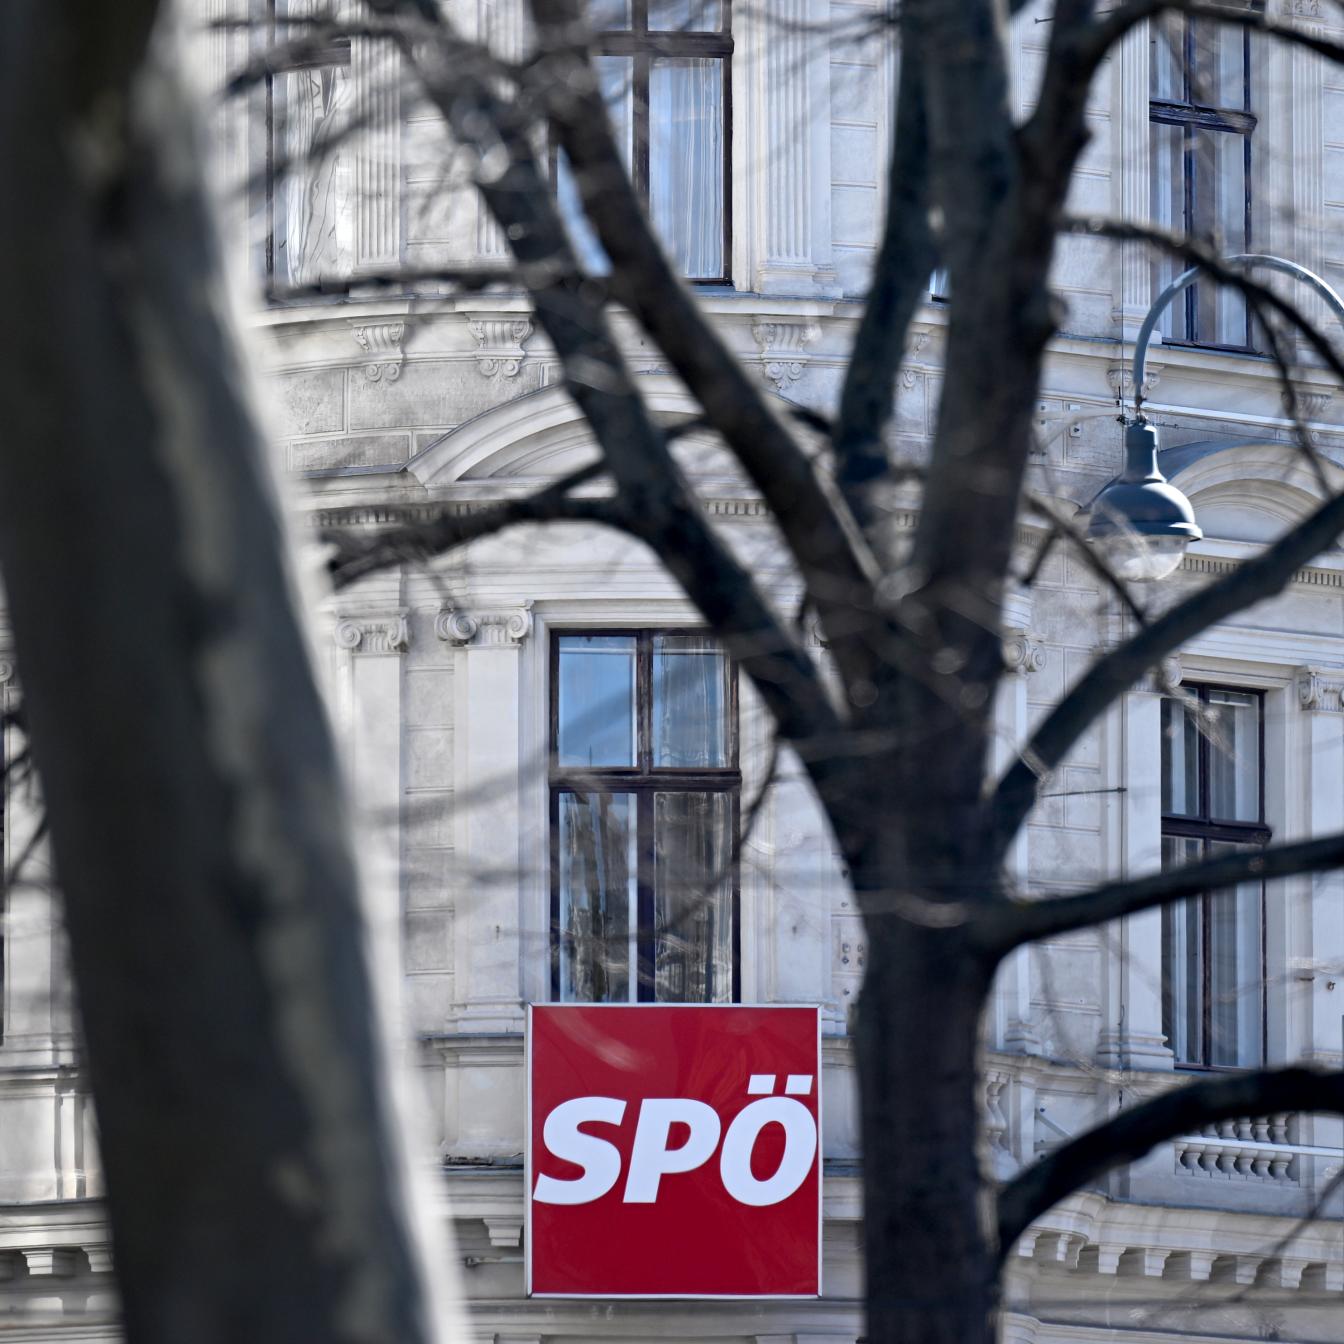 ++ THEMENBILD ++ SPÖ - SOZIALDEMOKRATISCHE PARTEI ÖSTERREICHS